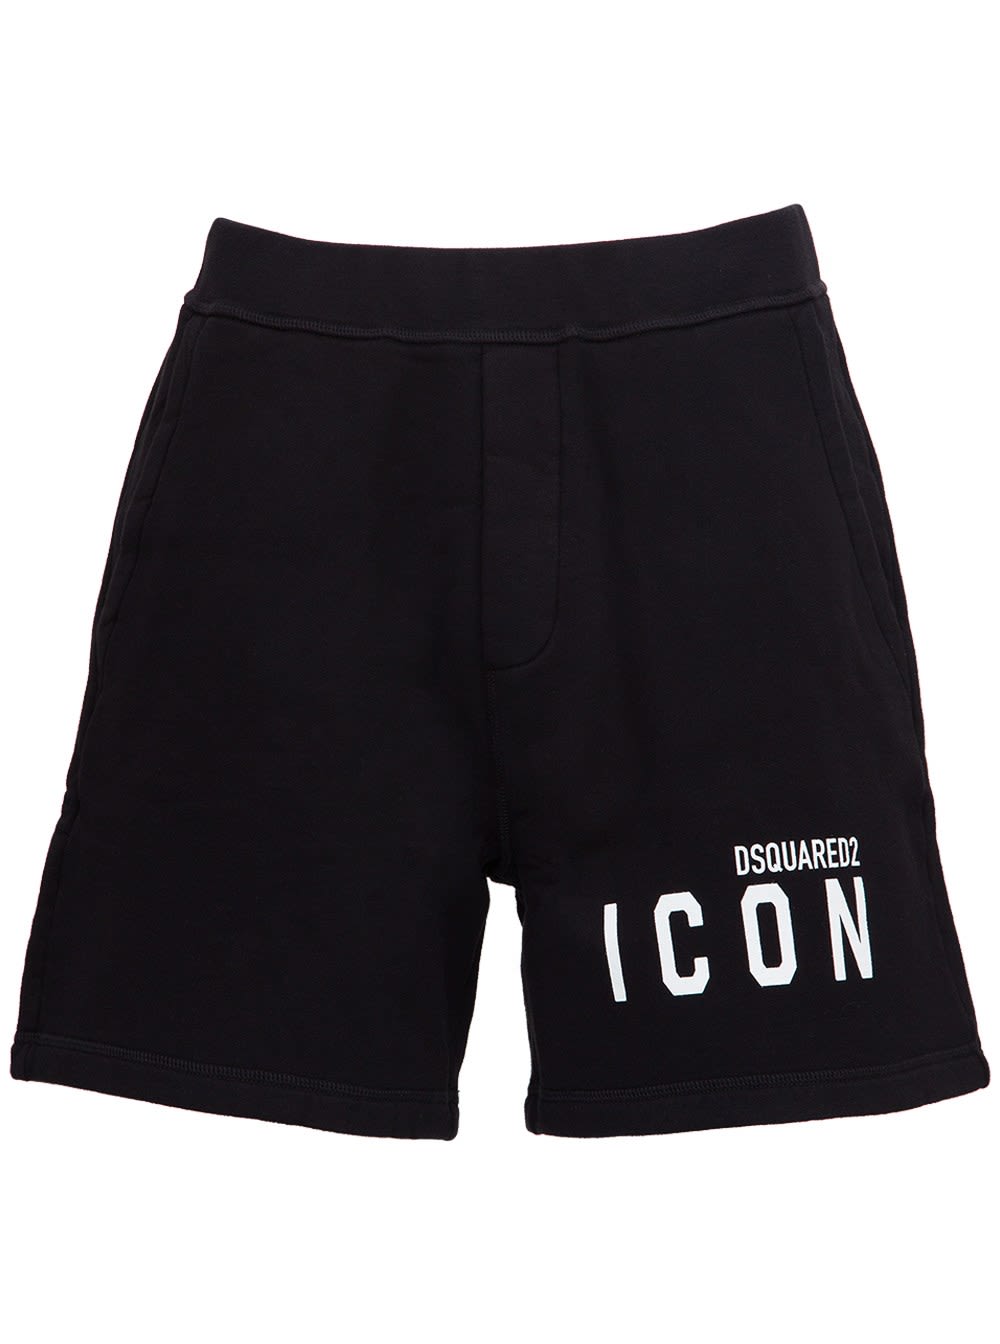 Dsquared2 Icon Cotton Bermuda Shorts